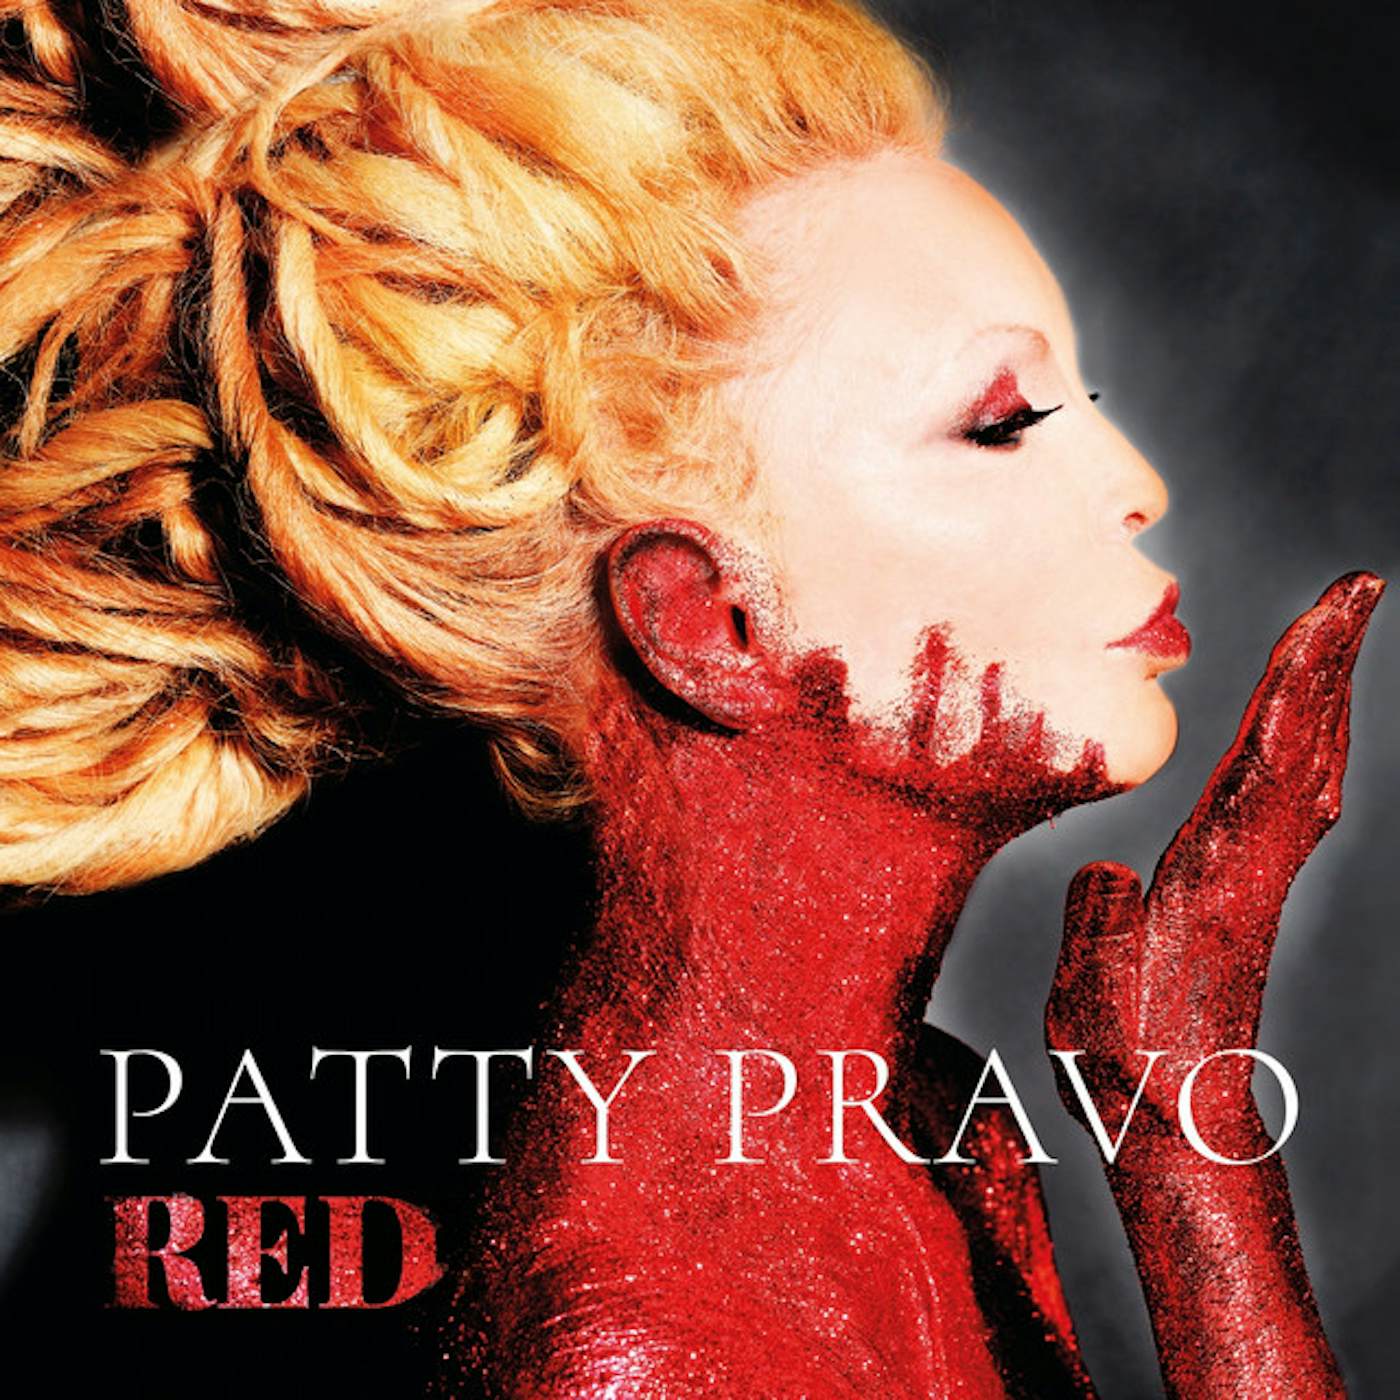 Patty Pravo RED CD